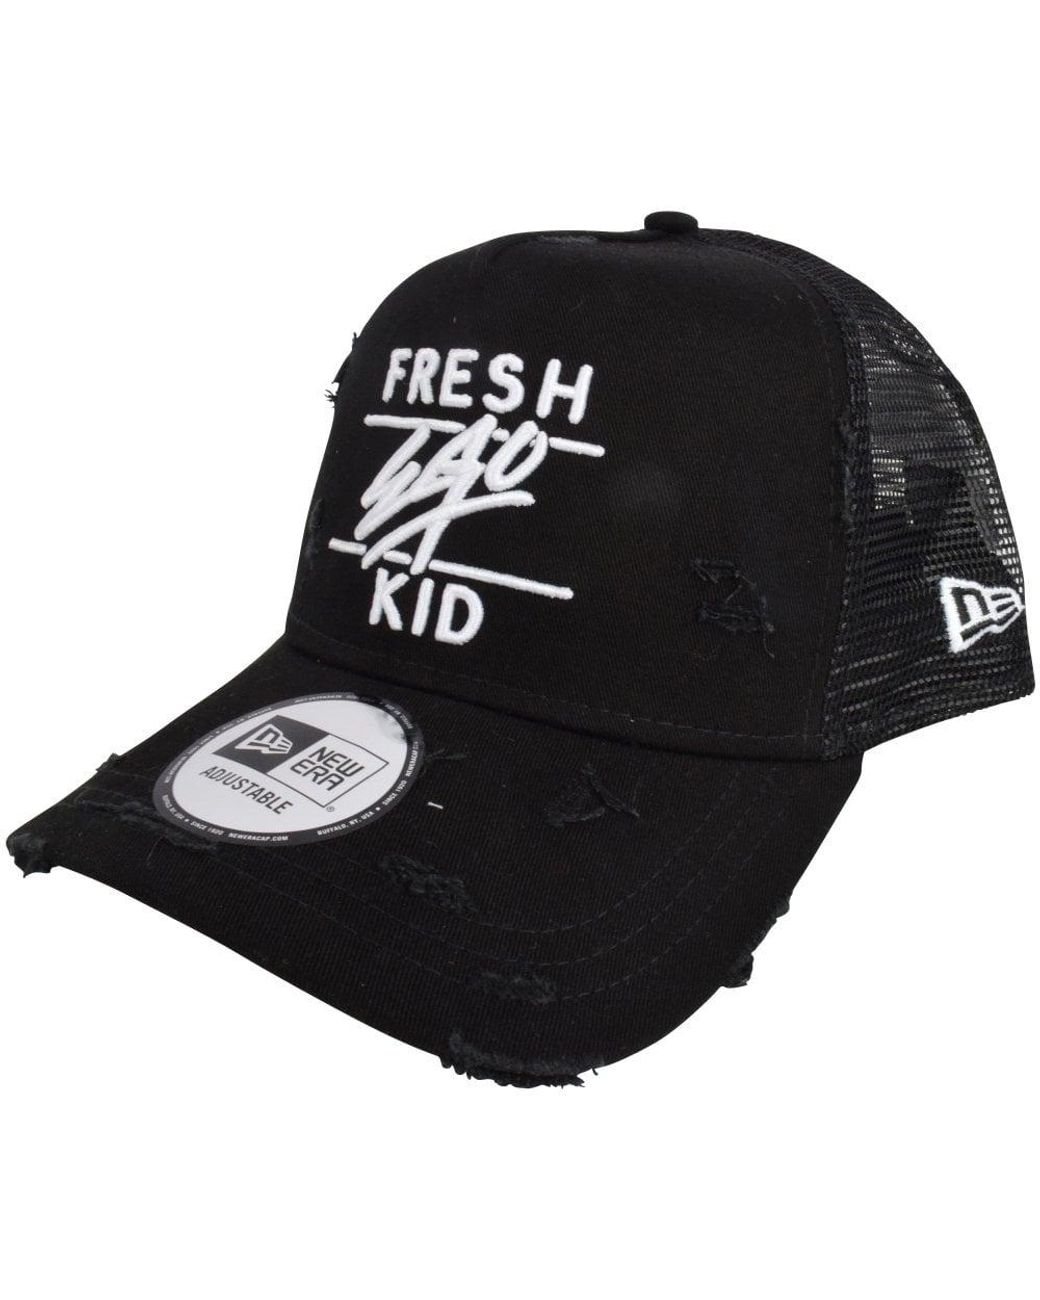 Fresh Ego Kid New Era 940 Black/Red Baseball Cap 